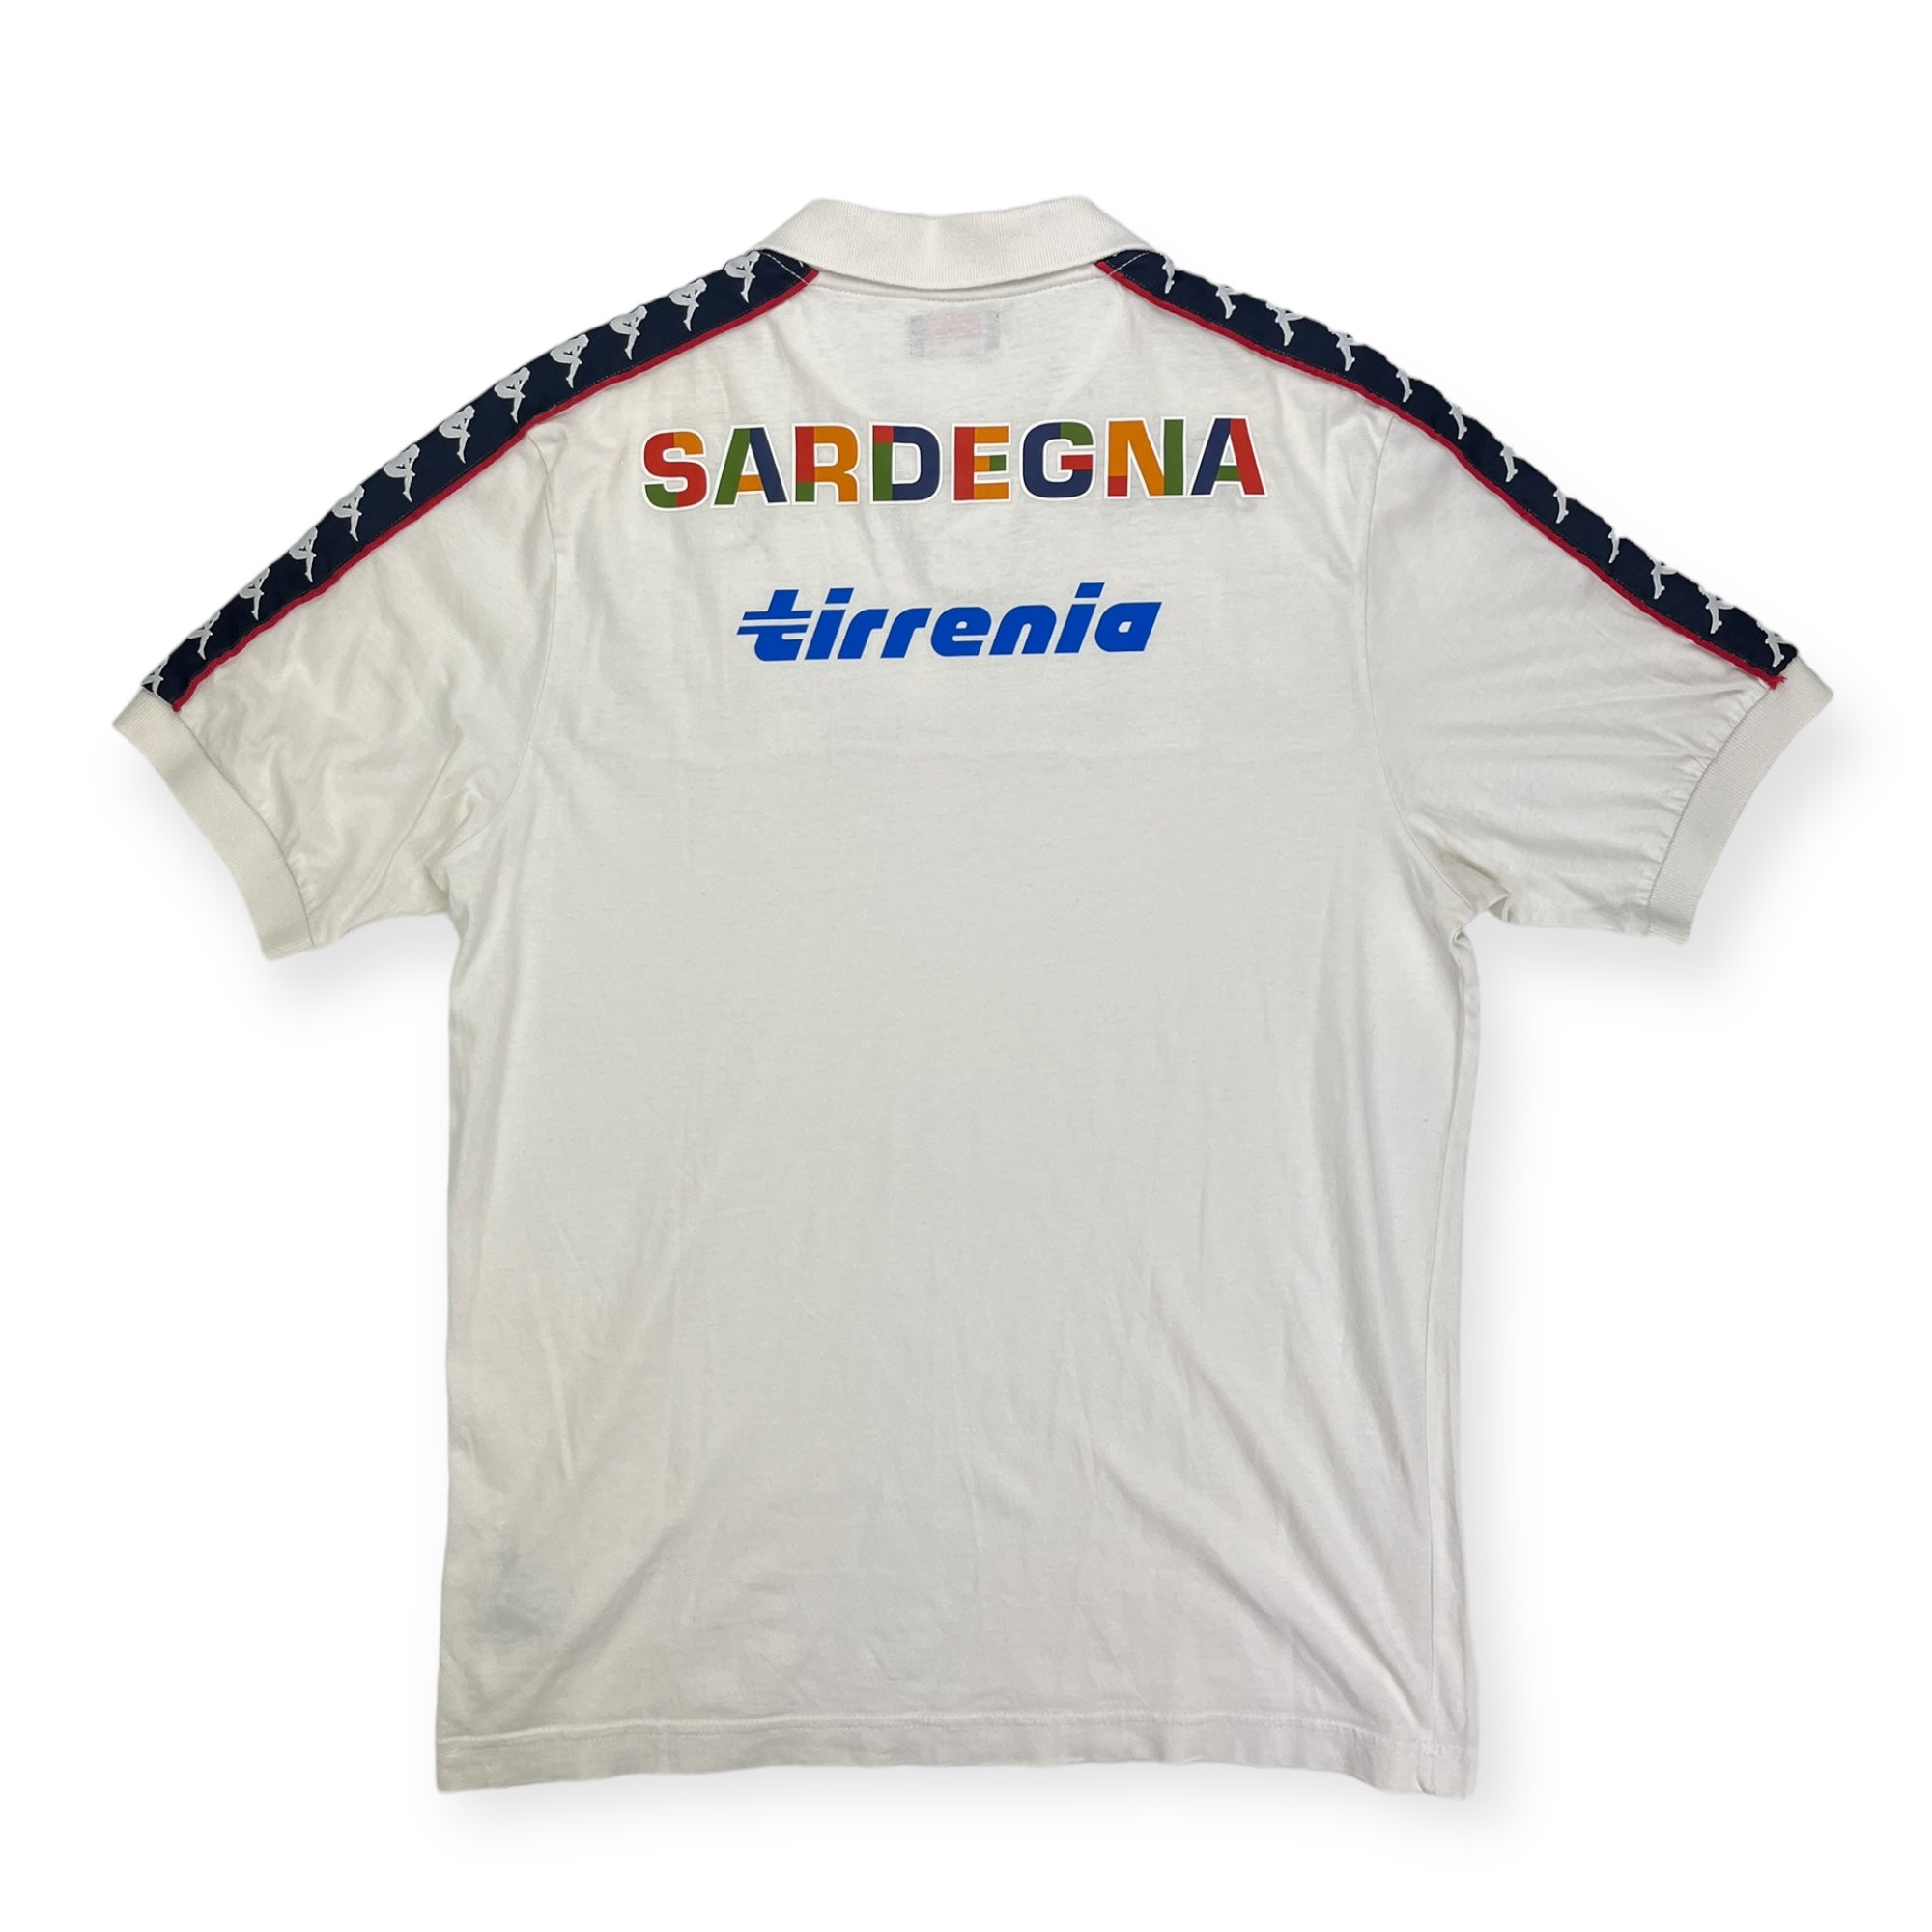 Cagliari Polo Shirt